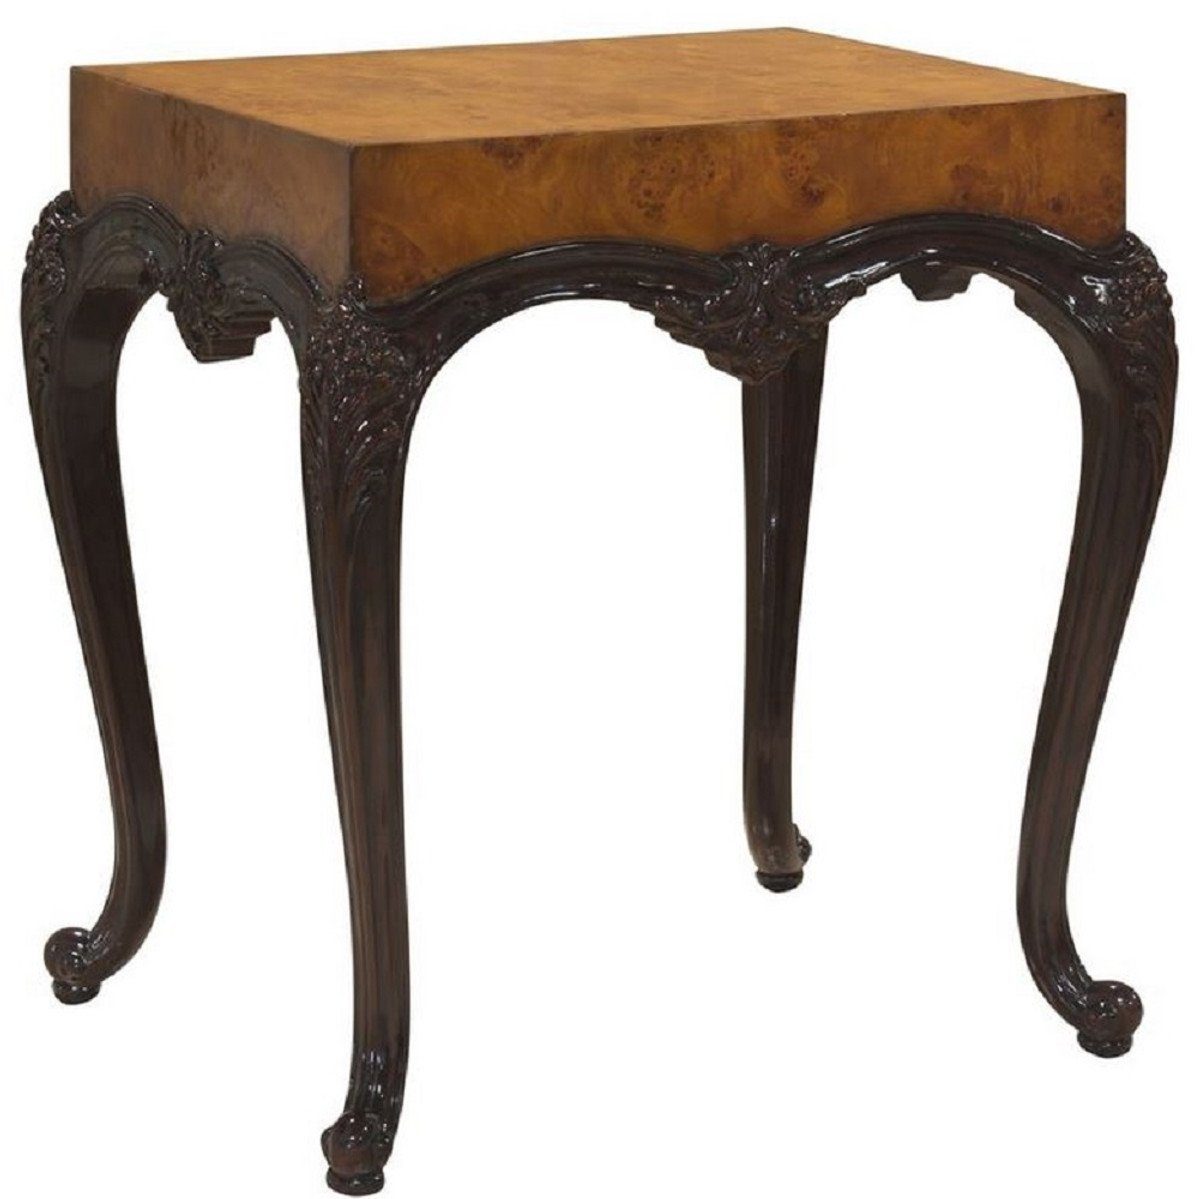 Prunkvoller Luxus im Möbel Beistelltisch / Barock Barock - - Massivholz Casa Tisch Schwarz Padrino Beistelltisch Hellbraun Barockstil